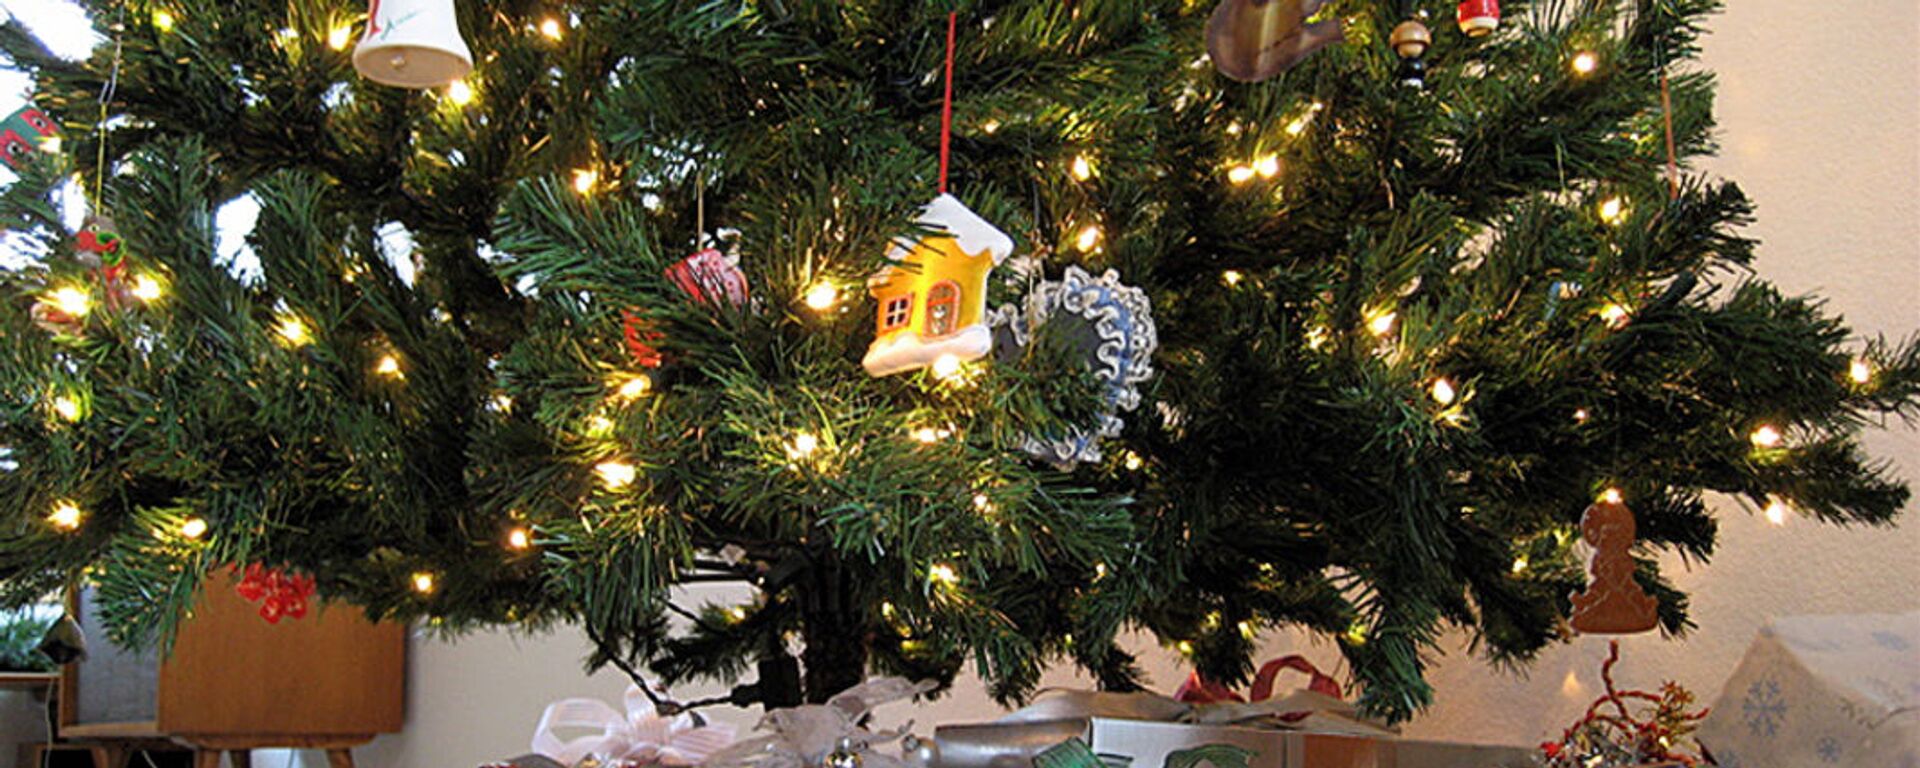 Рождественская елка в доме - Sputnik Lietuva, 1920, 28.11.2021